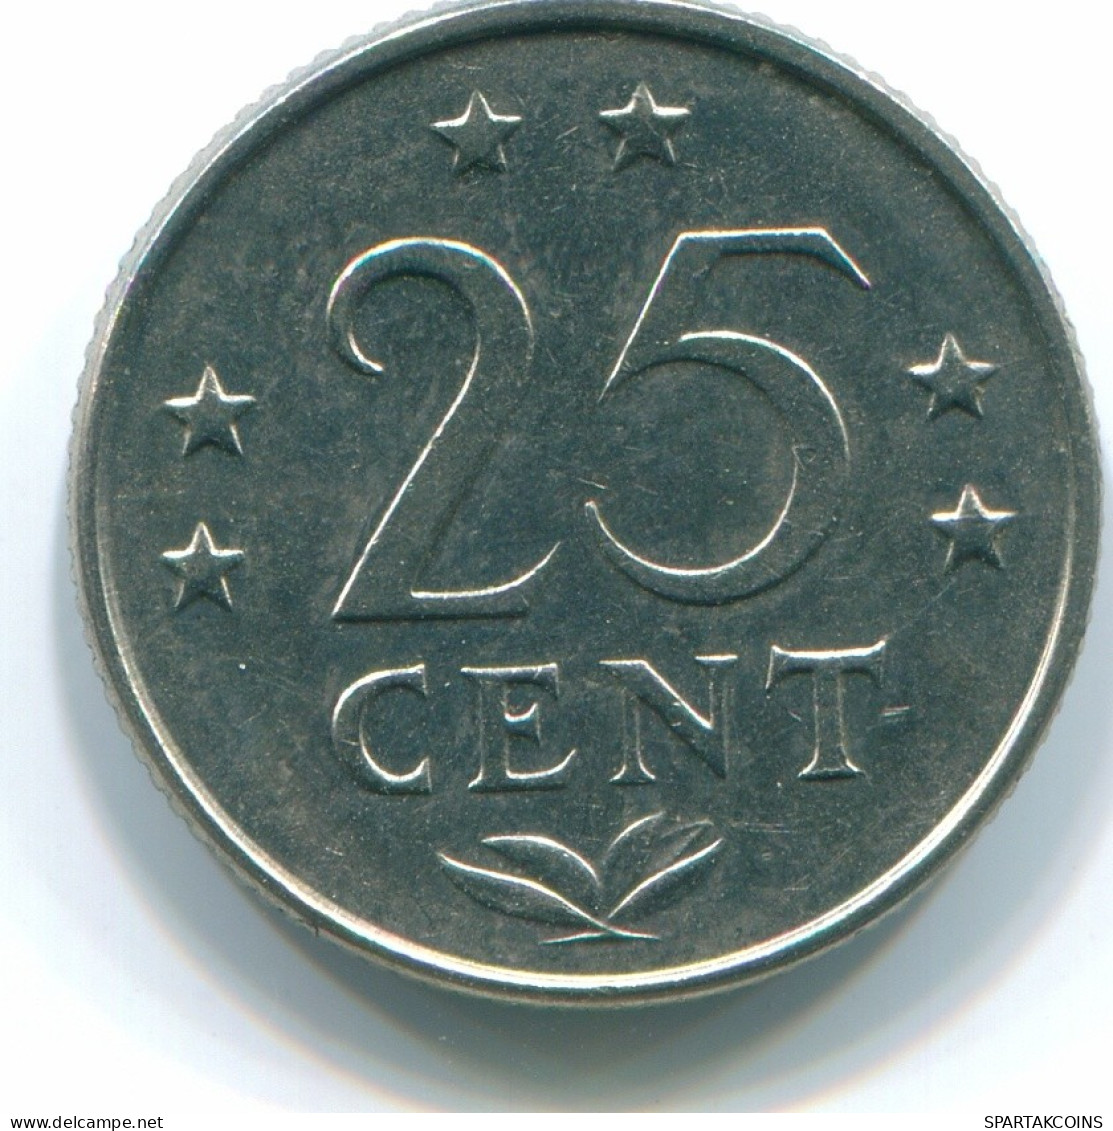 25 CENTS 1975 NIEDERLÄNDISCHE ANTILLEN Nickel Koloniale Münze #S11623.D.A - Antille Olandesi